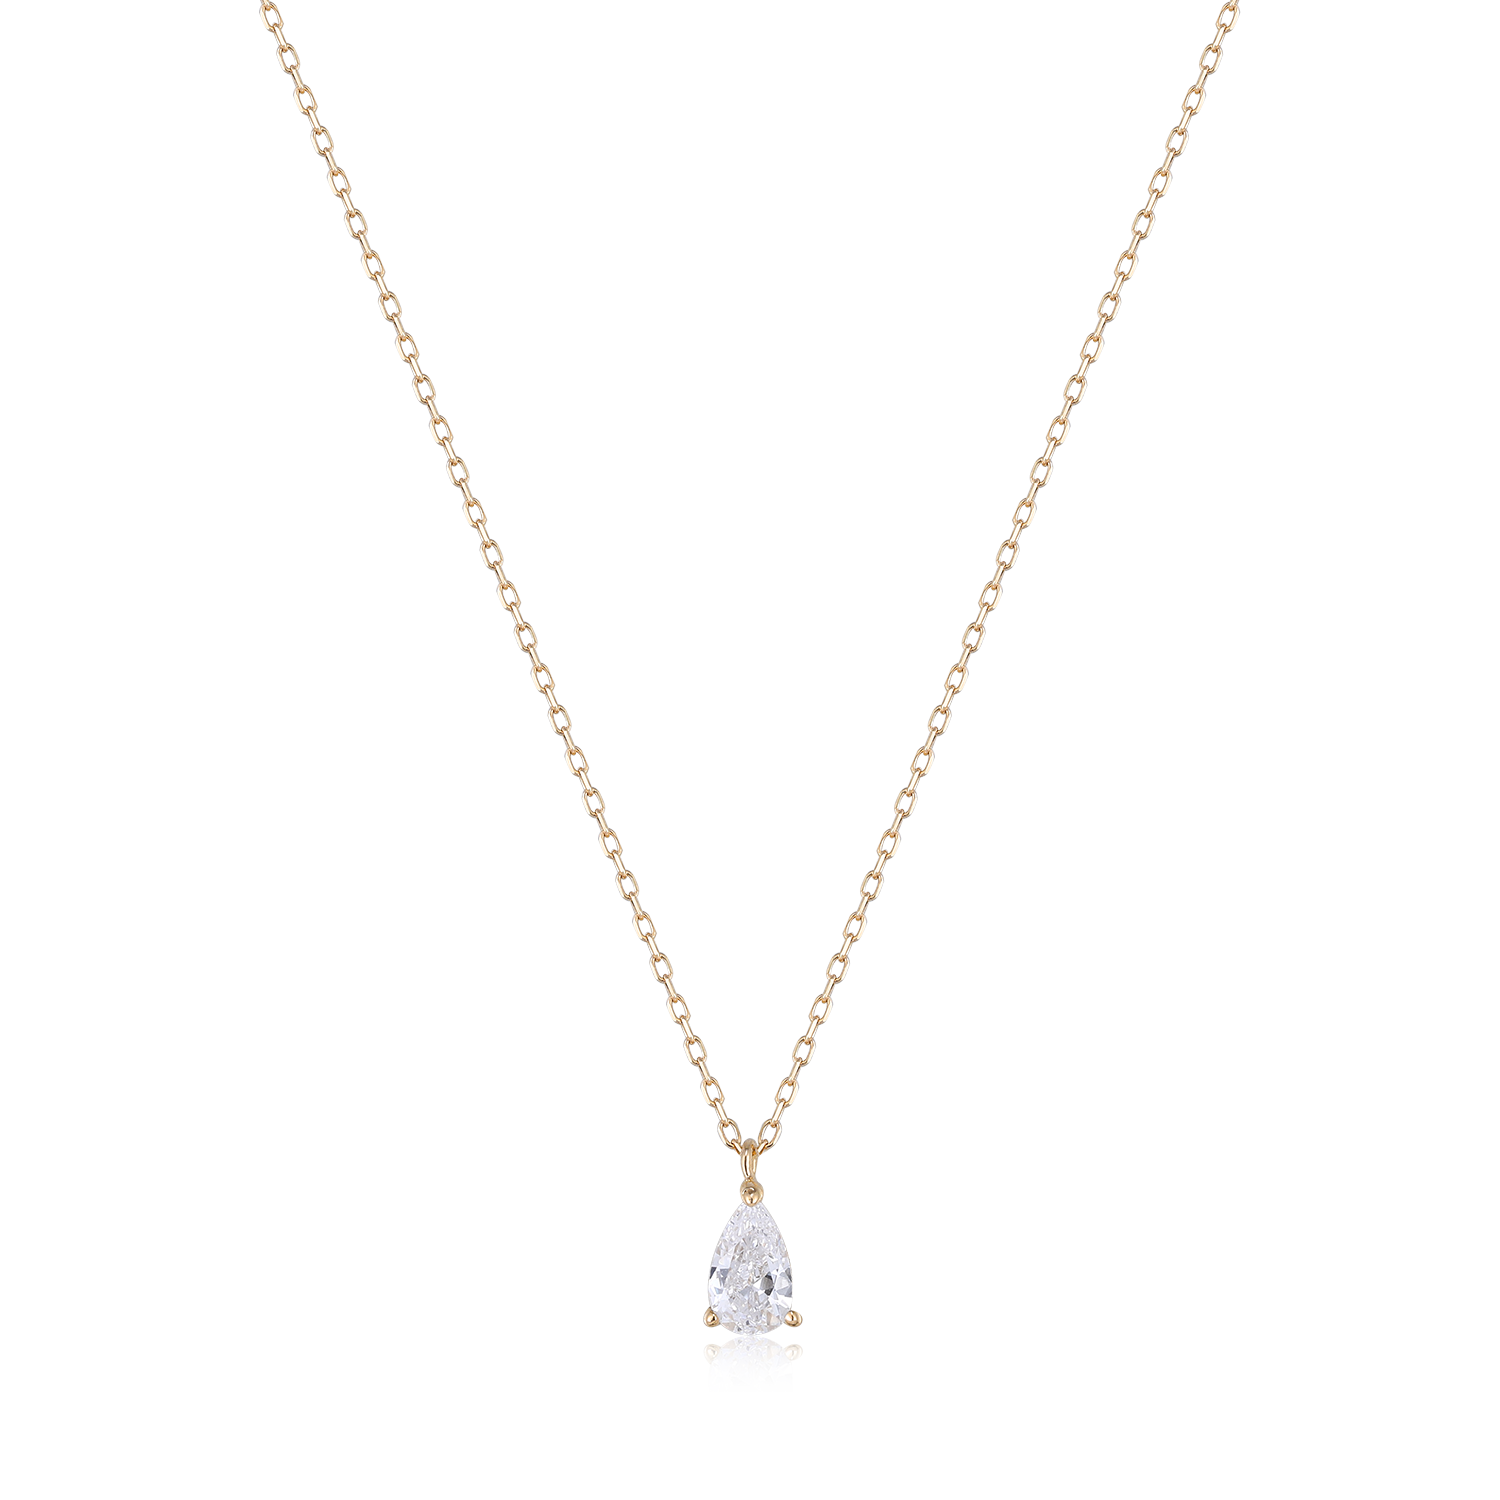 Pear Diamond Necklace